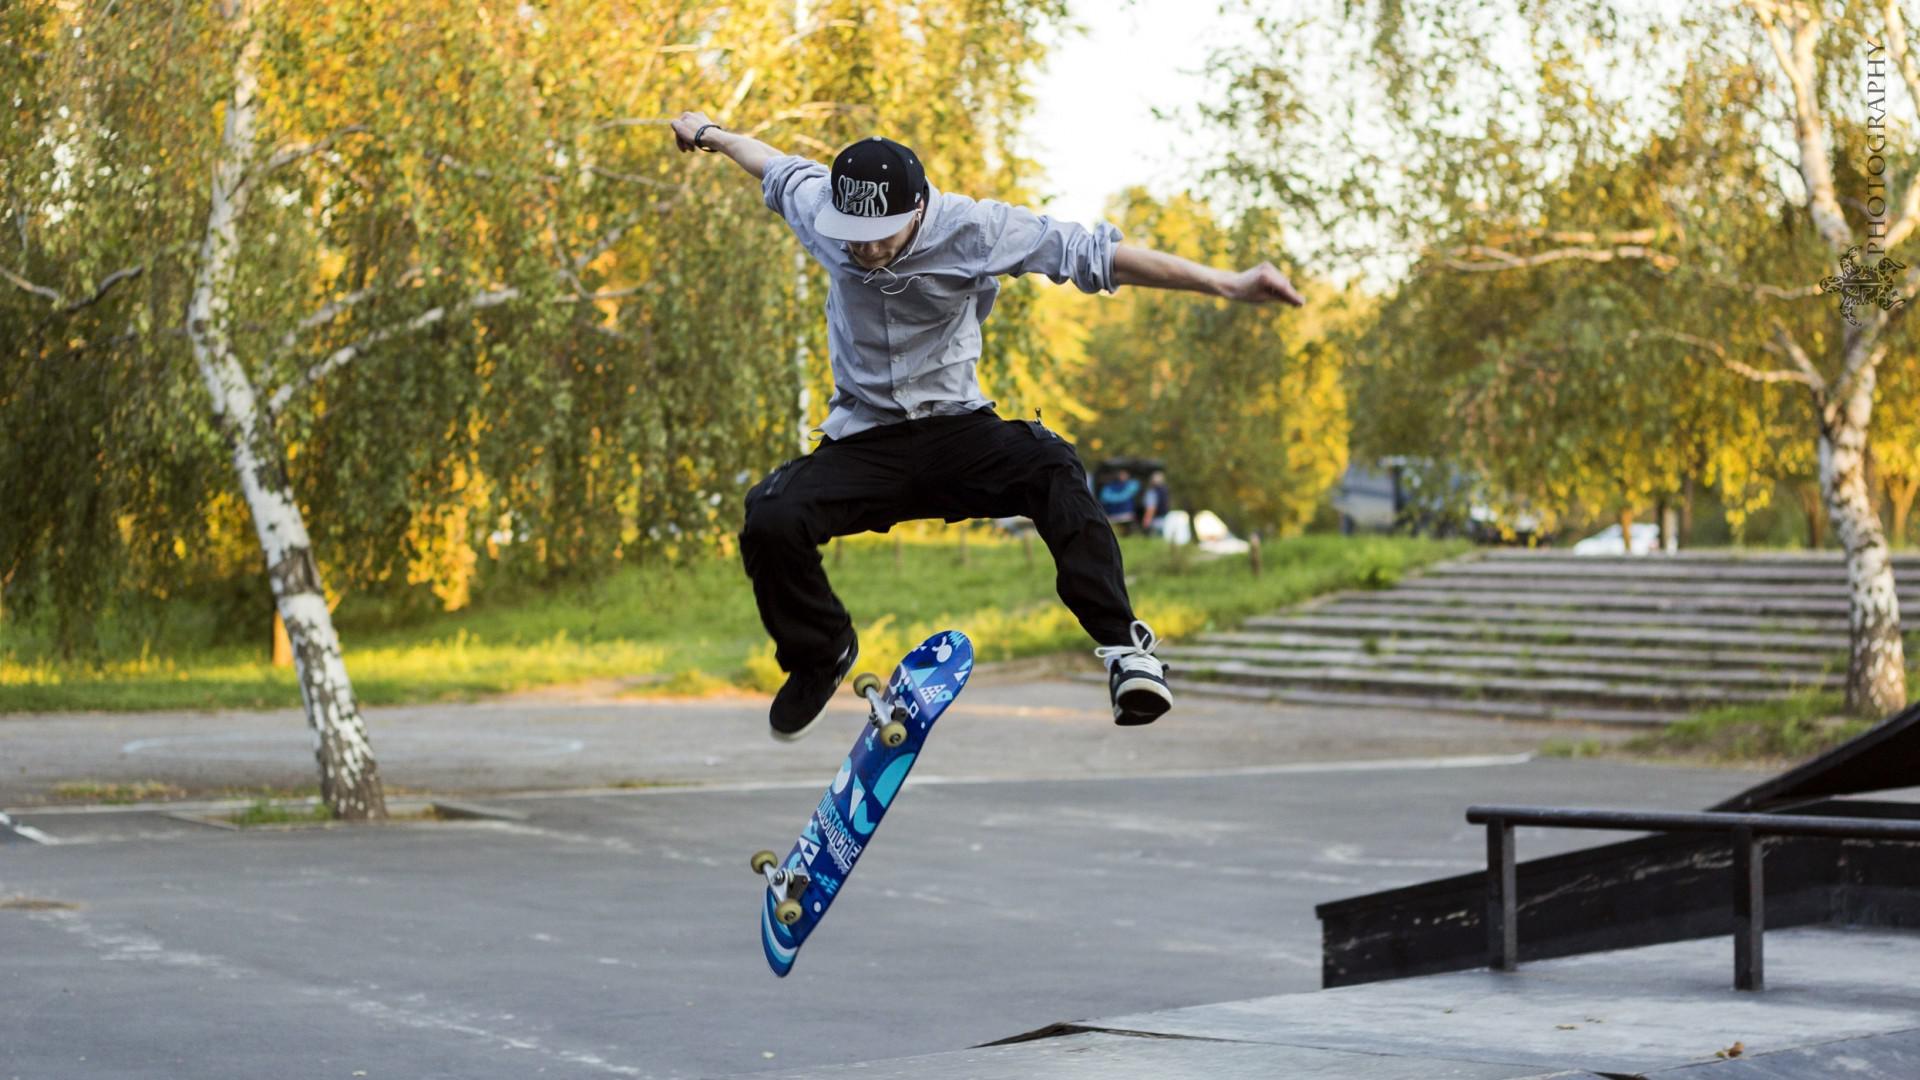 Skateboard Kickflip Wallpaper Other Better